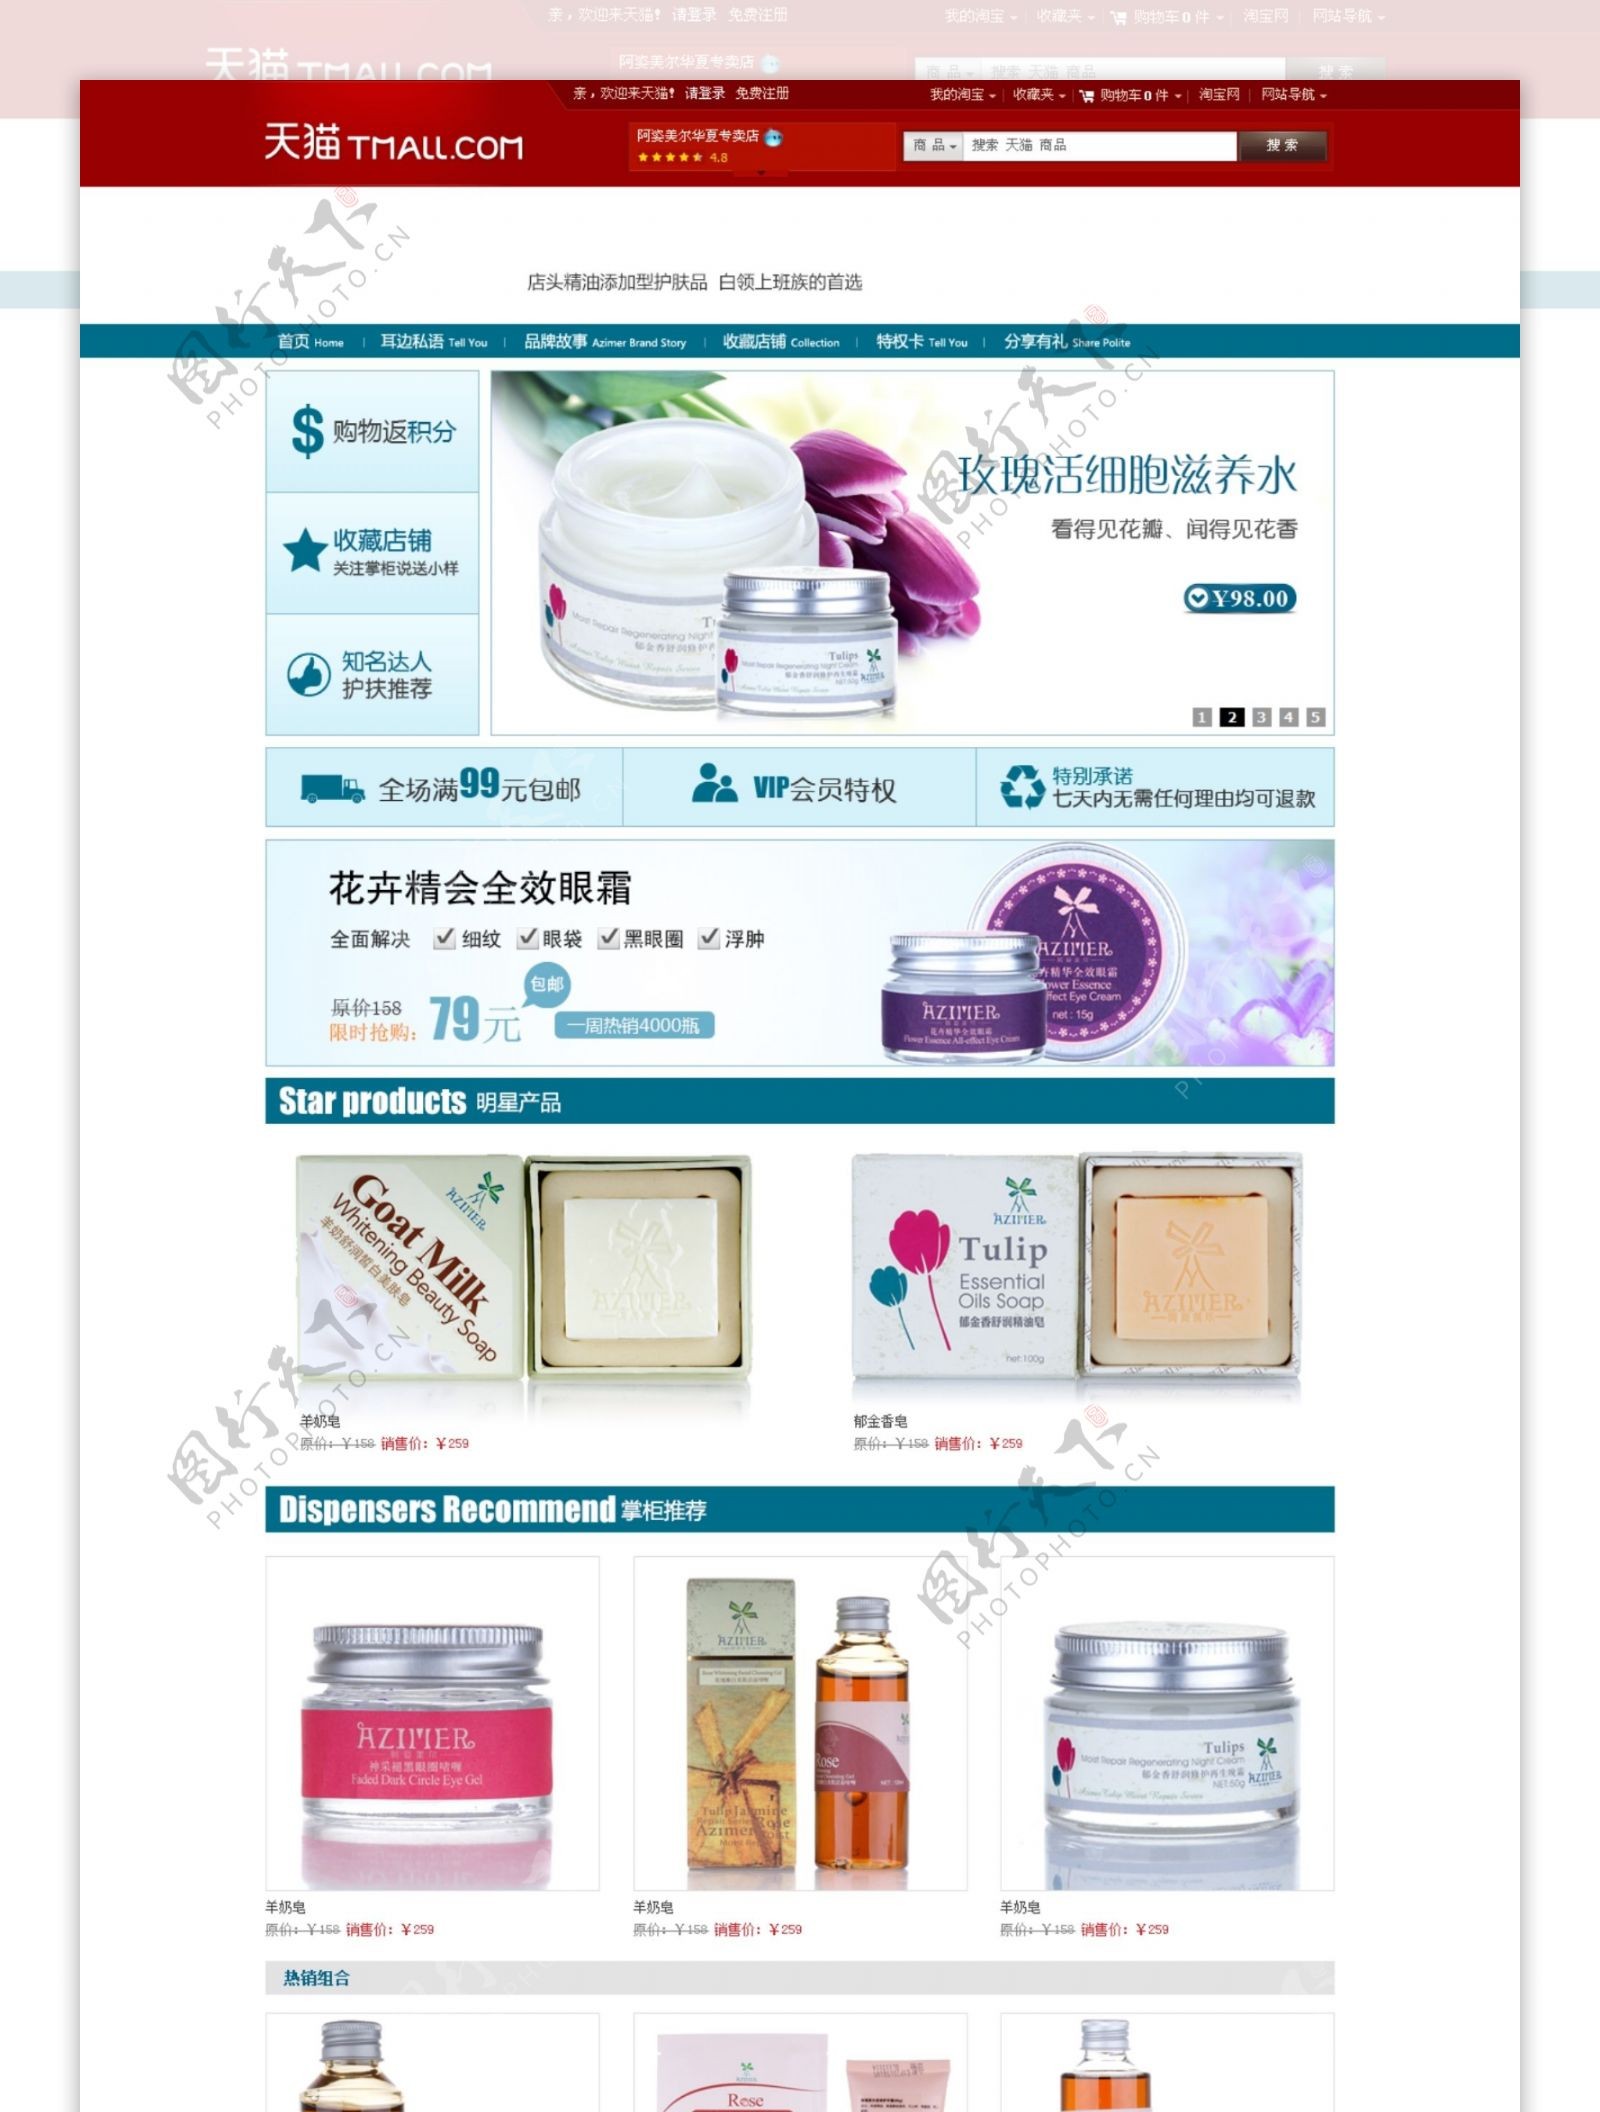 天猫促销小清新唯美风格韩国化妆品店铺装修